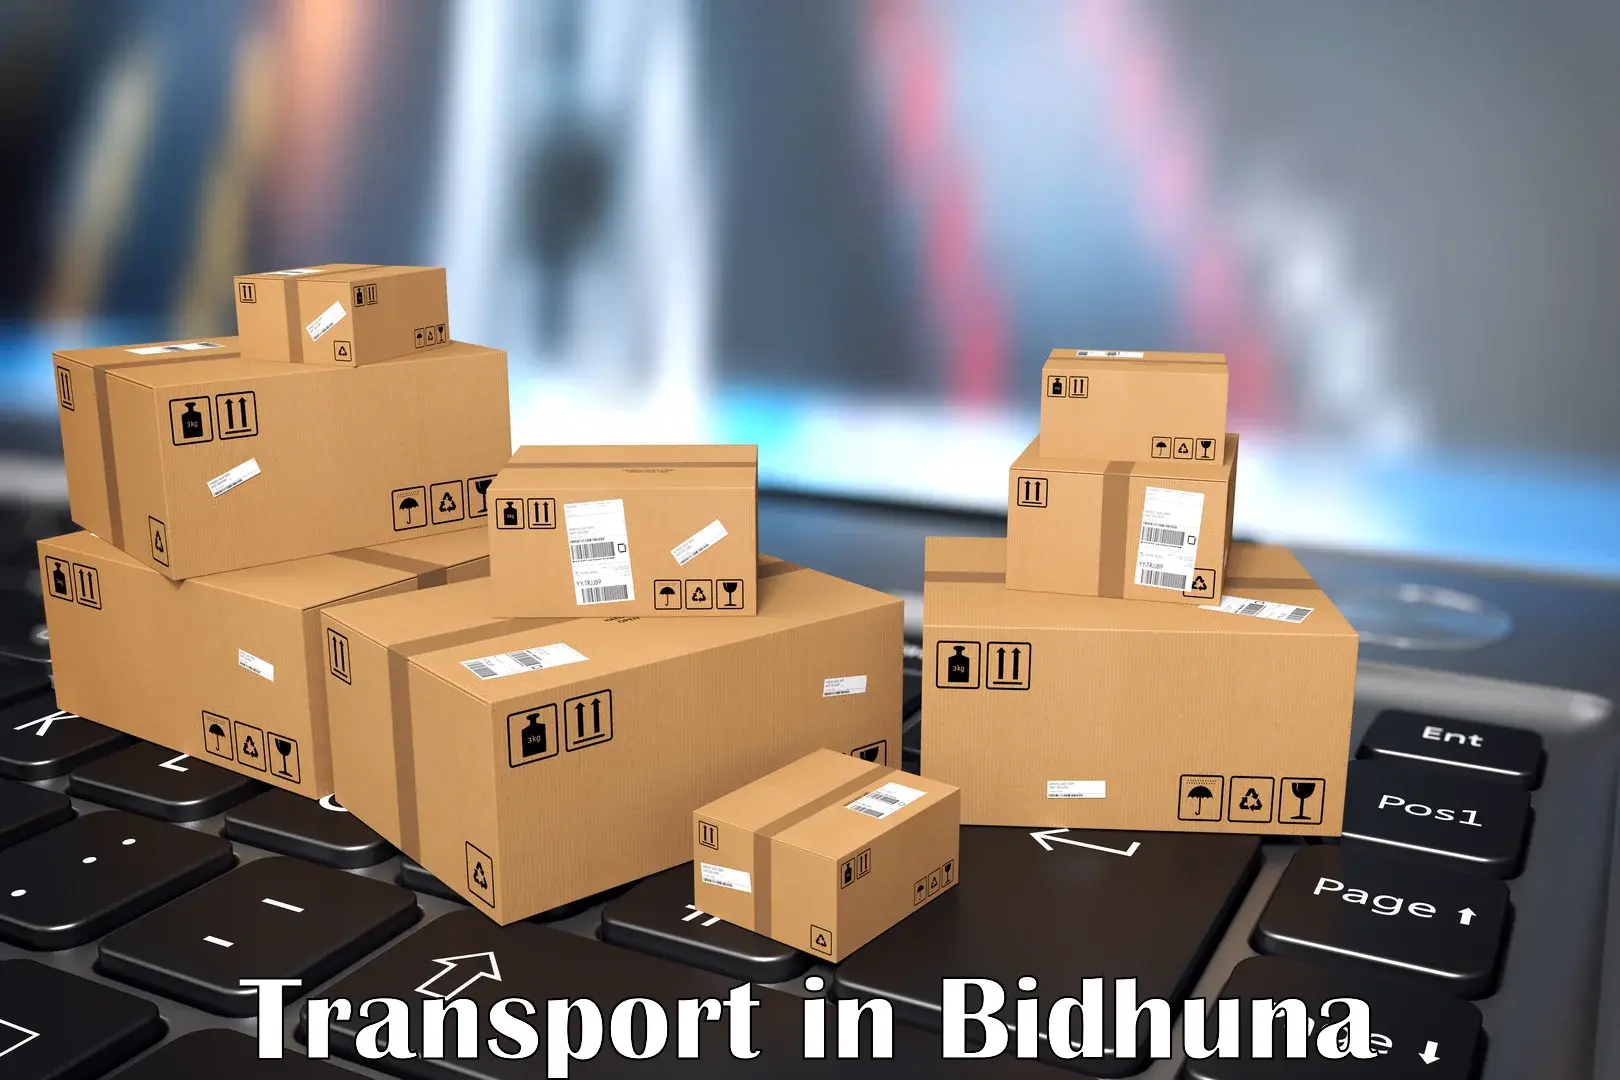 Interstate goods transport in Bidhuna